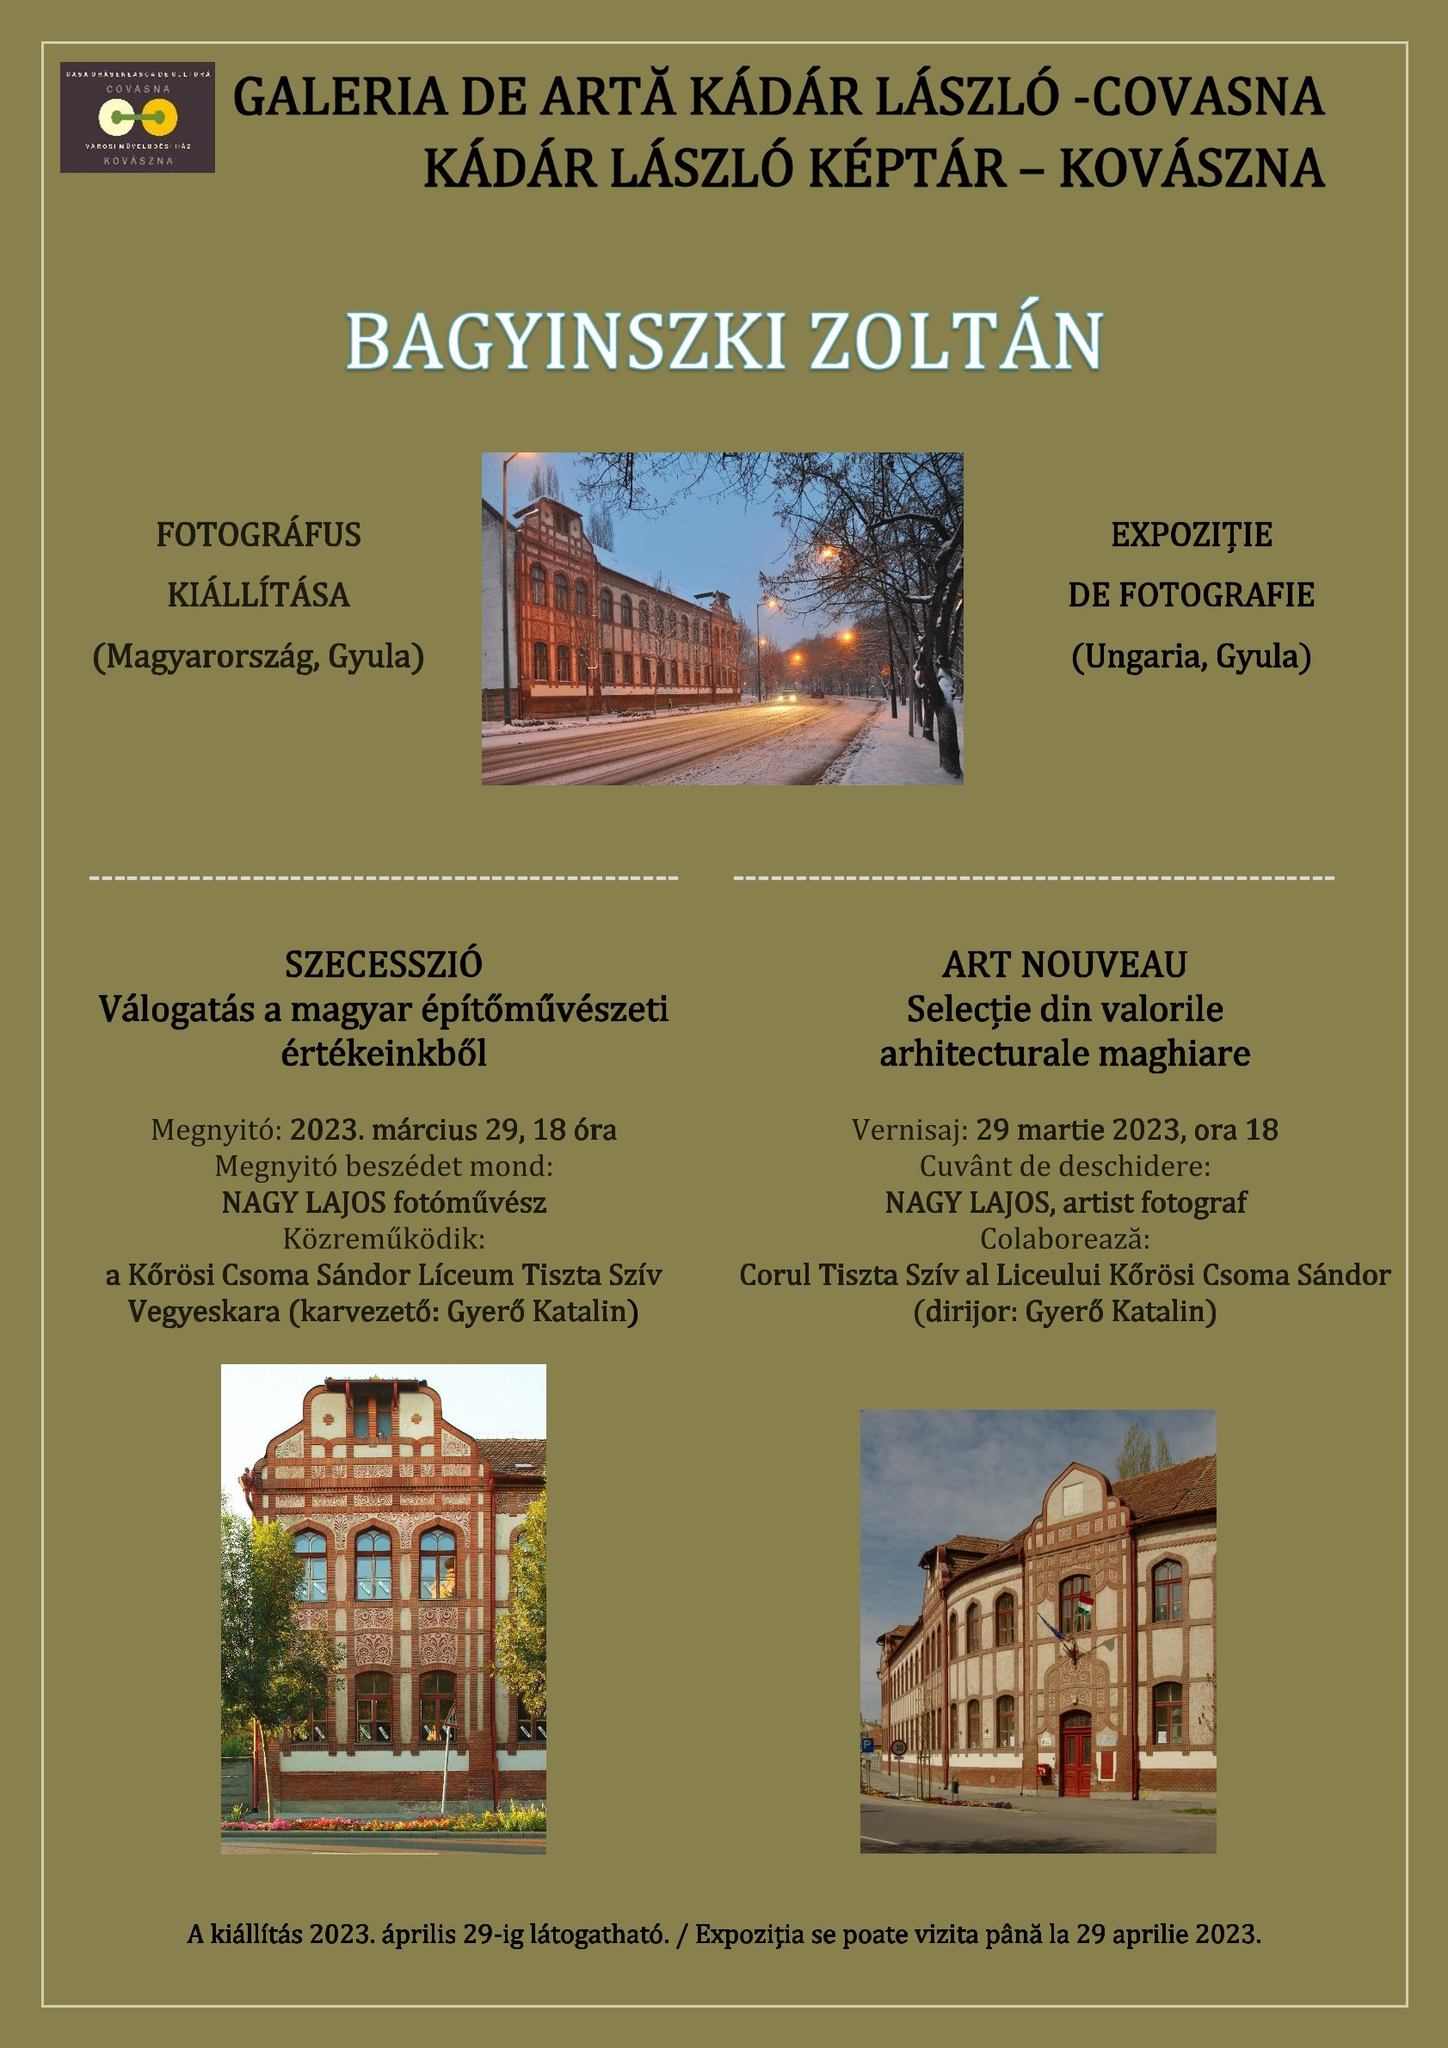 ART NOUVEAU - Selecție din valorile arhitecturale maghiare